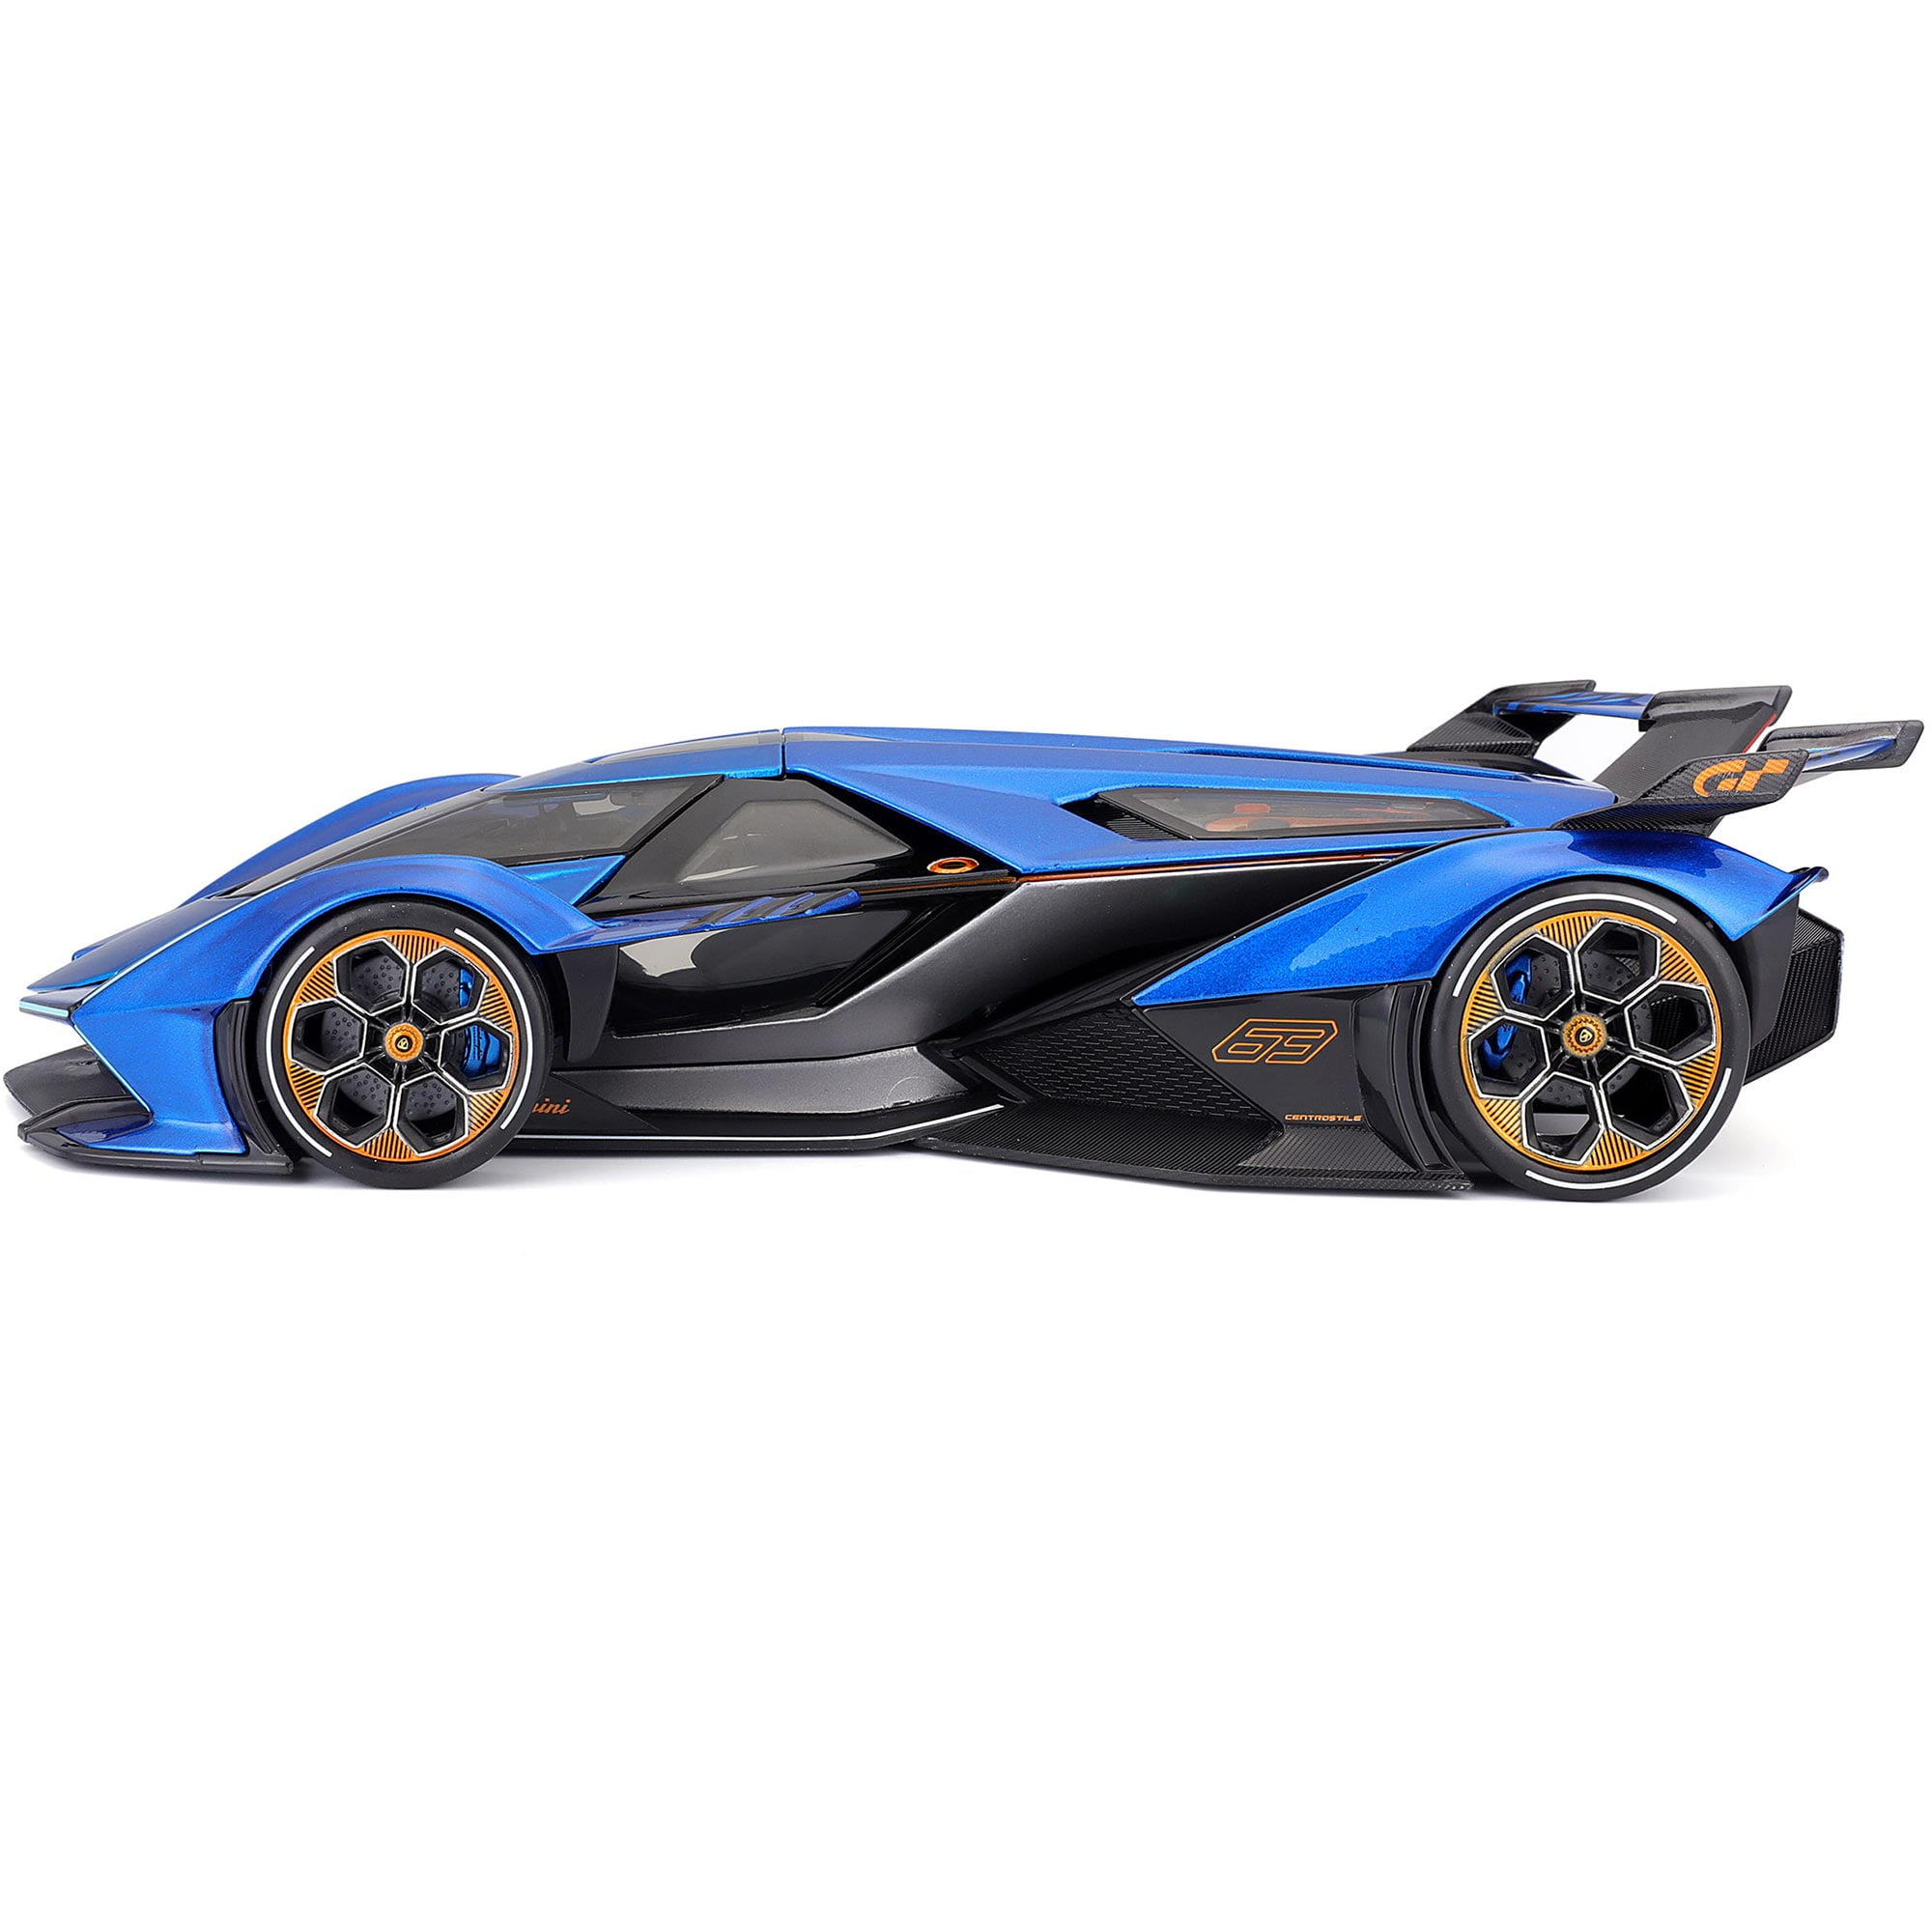 Maisto 31454bl Metallic 1 by 18 Diecast Model Car for Lamborghini V12  Vision Gran Turismo, Blue